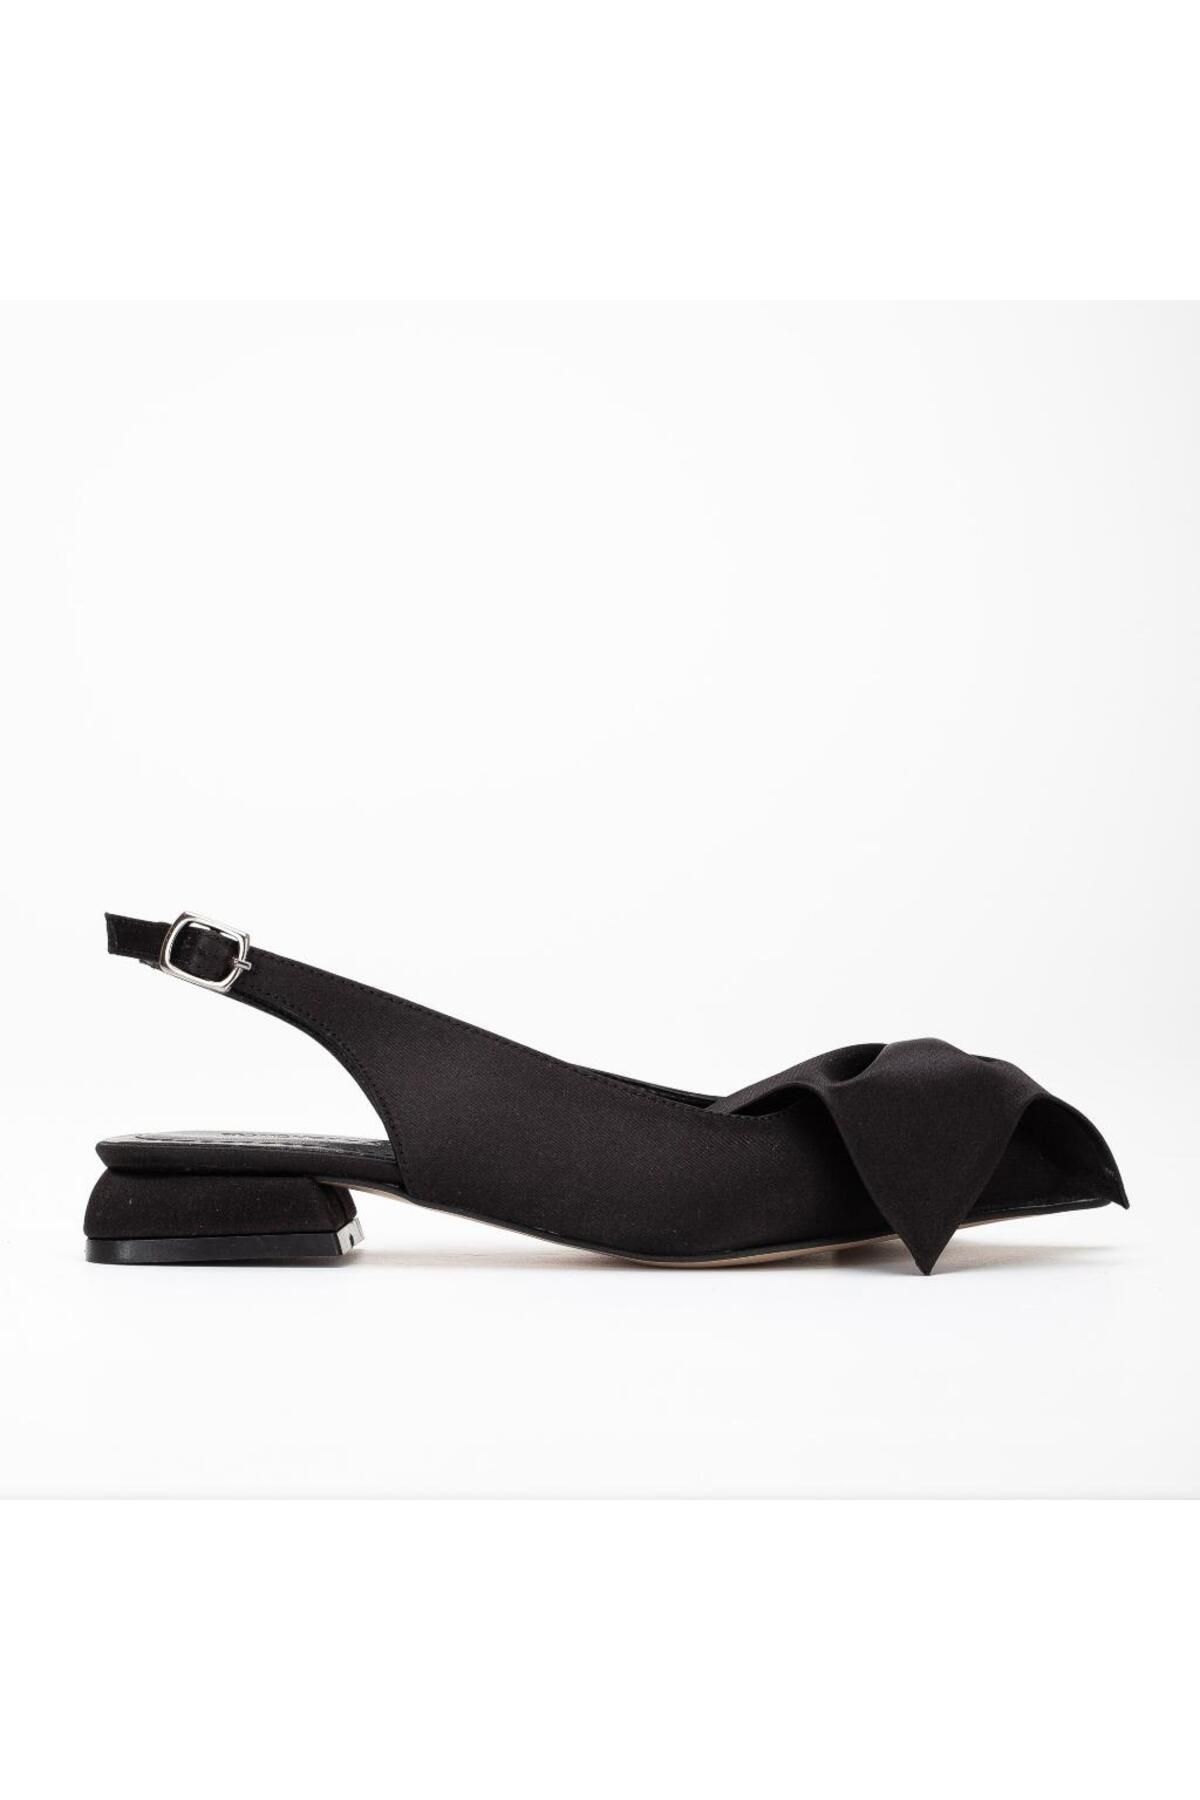 Forever and Always Shoes Siyah Saten Klasik Şık Günlük Slingback Ayakkabı -Lola